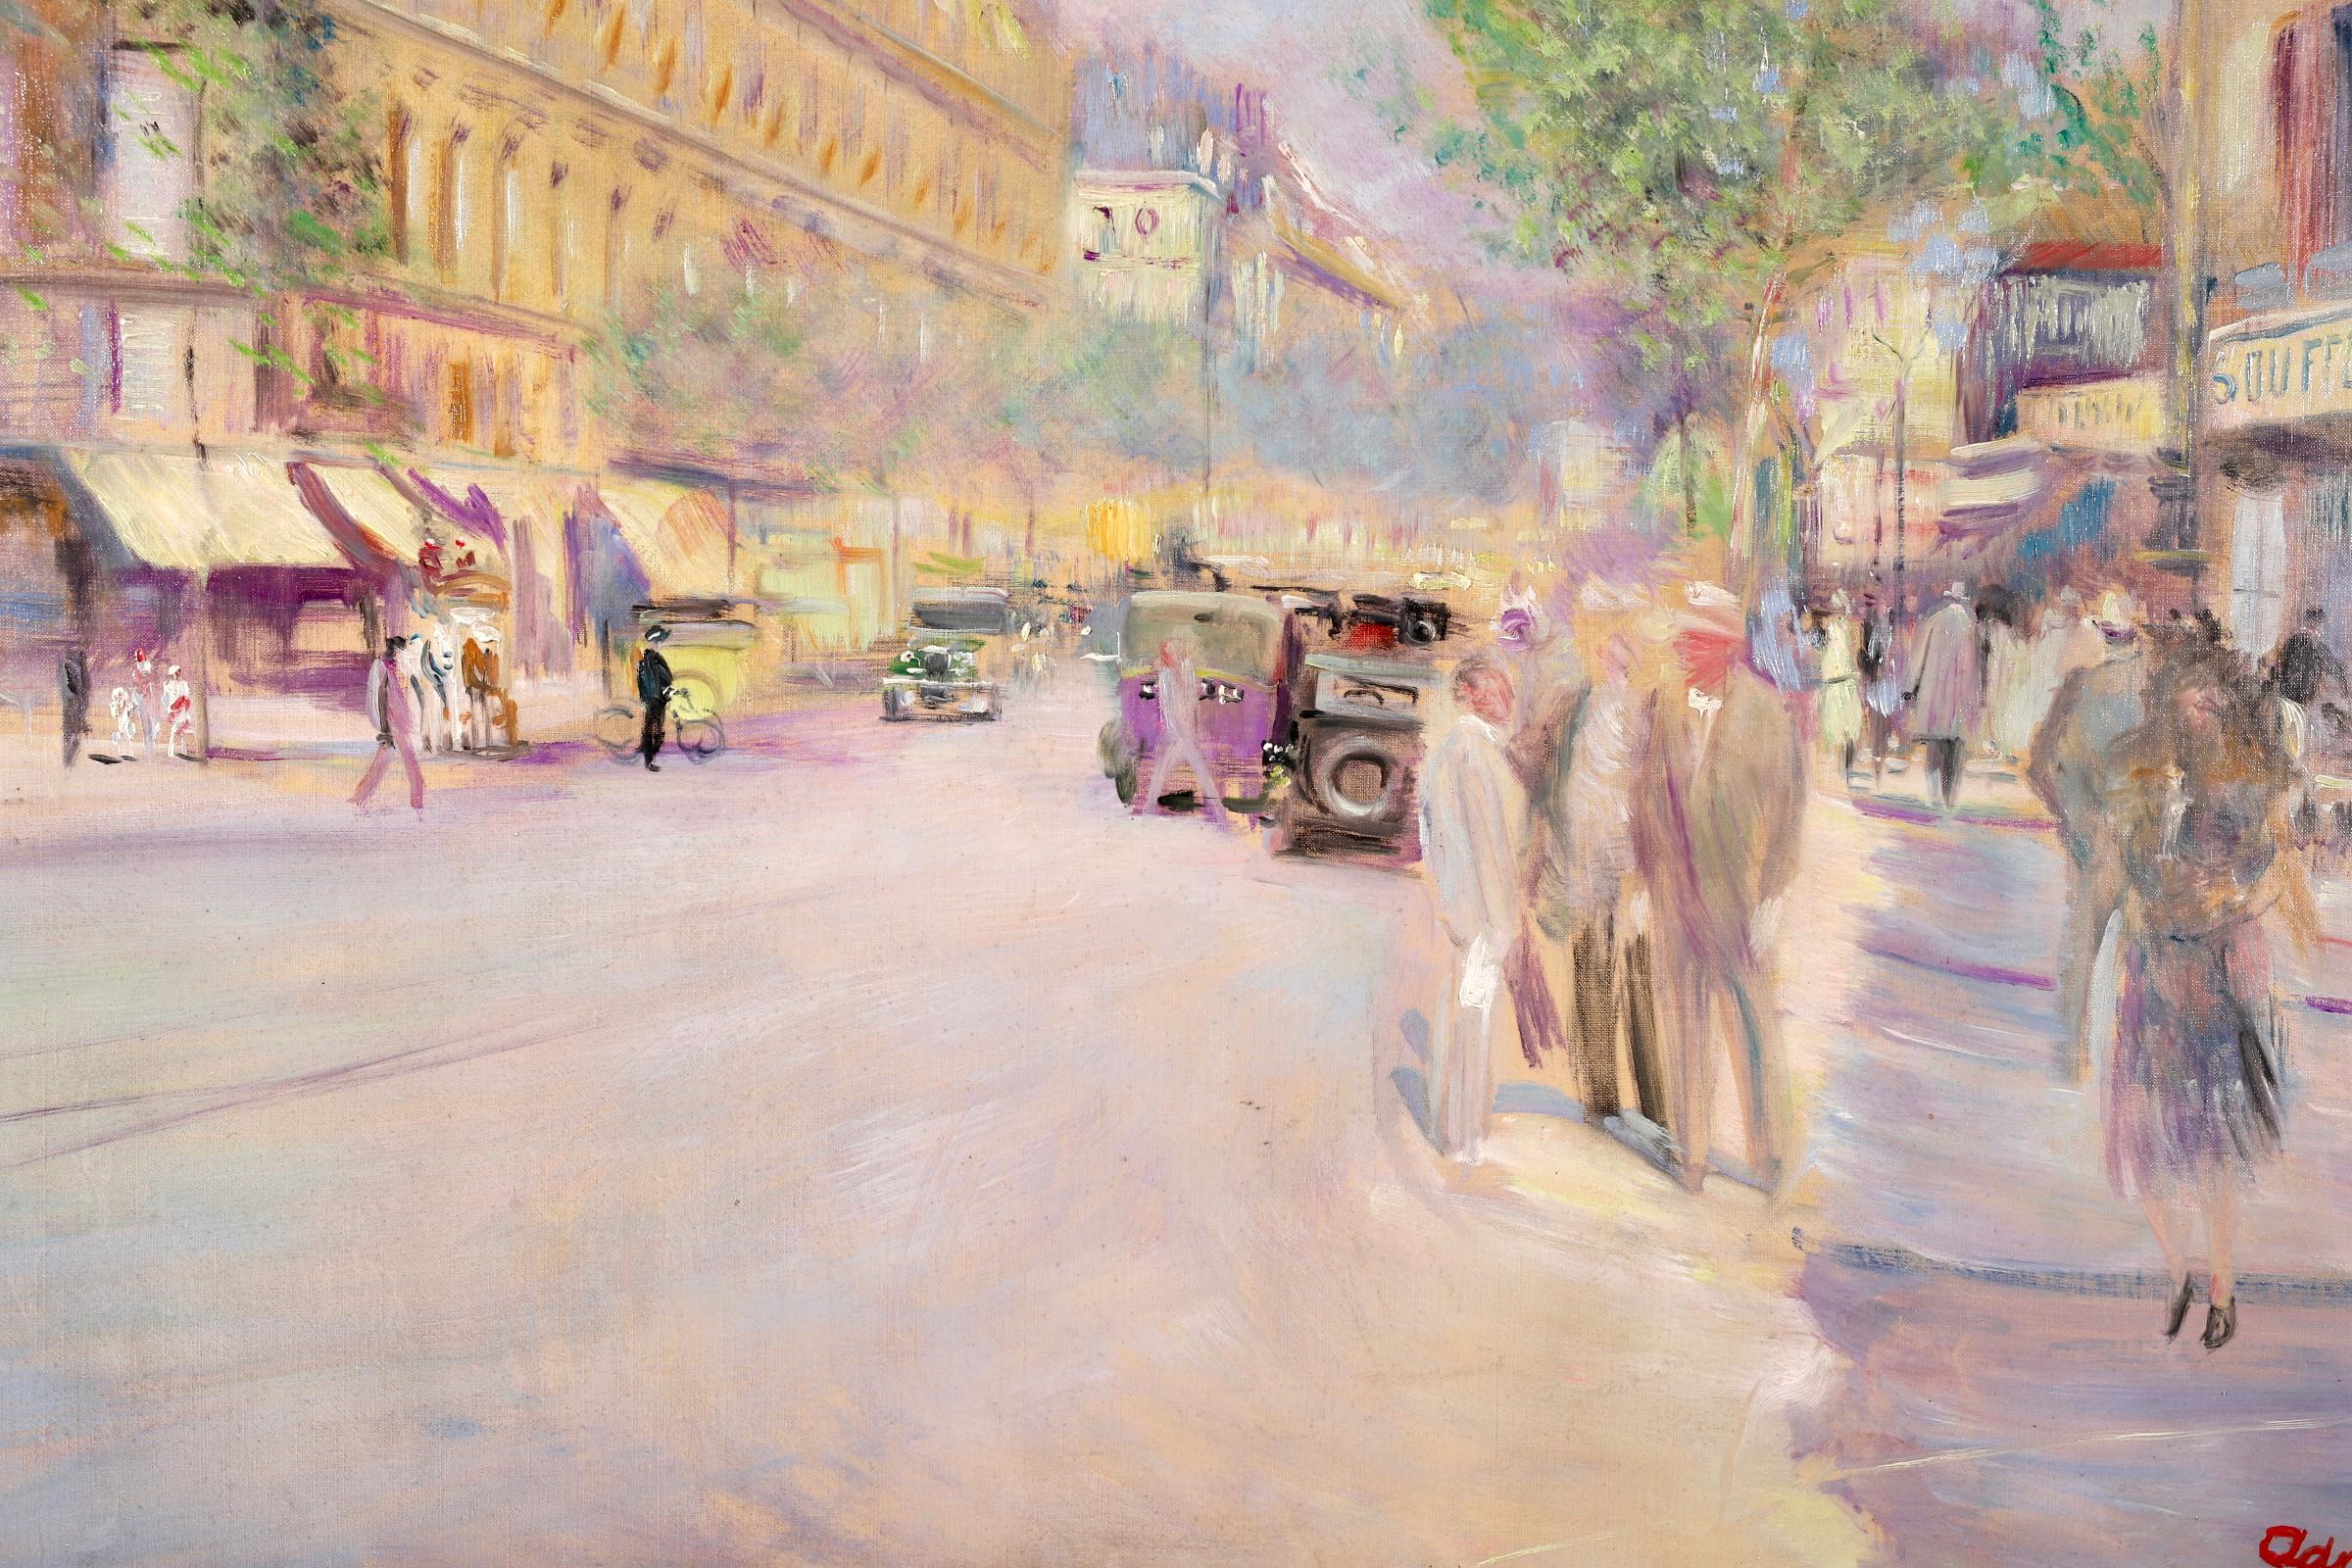 Boulevard Saint-Michel - Paris - Post Impressionist Oil, Cityscape by L Adrion 1